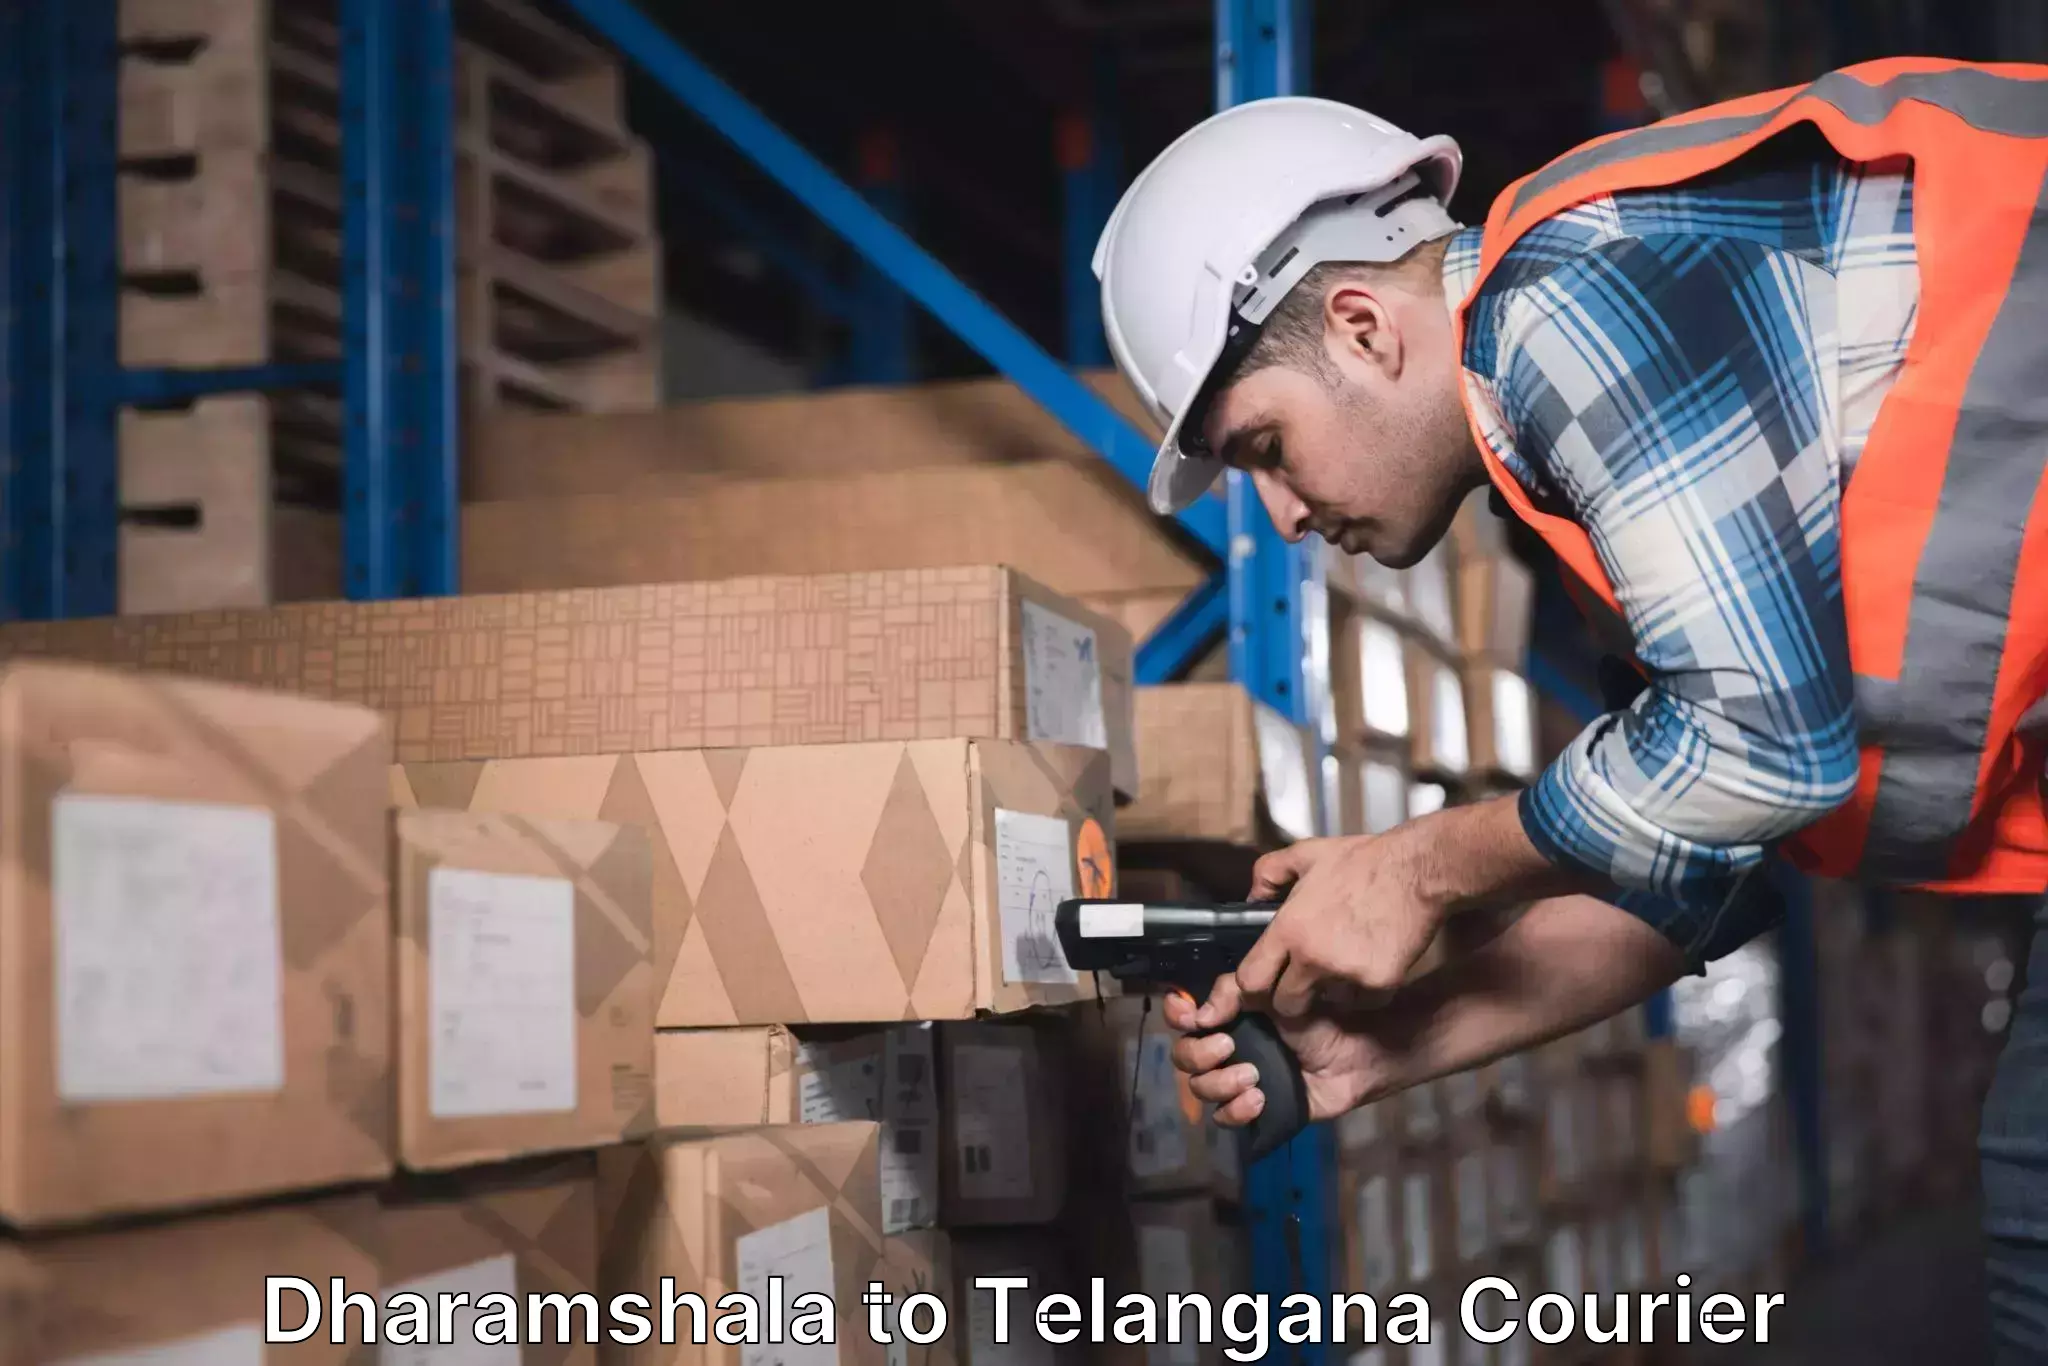 Tech-enabled shipping Dharamshala to Mahabubabad